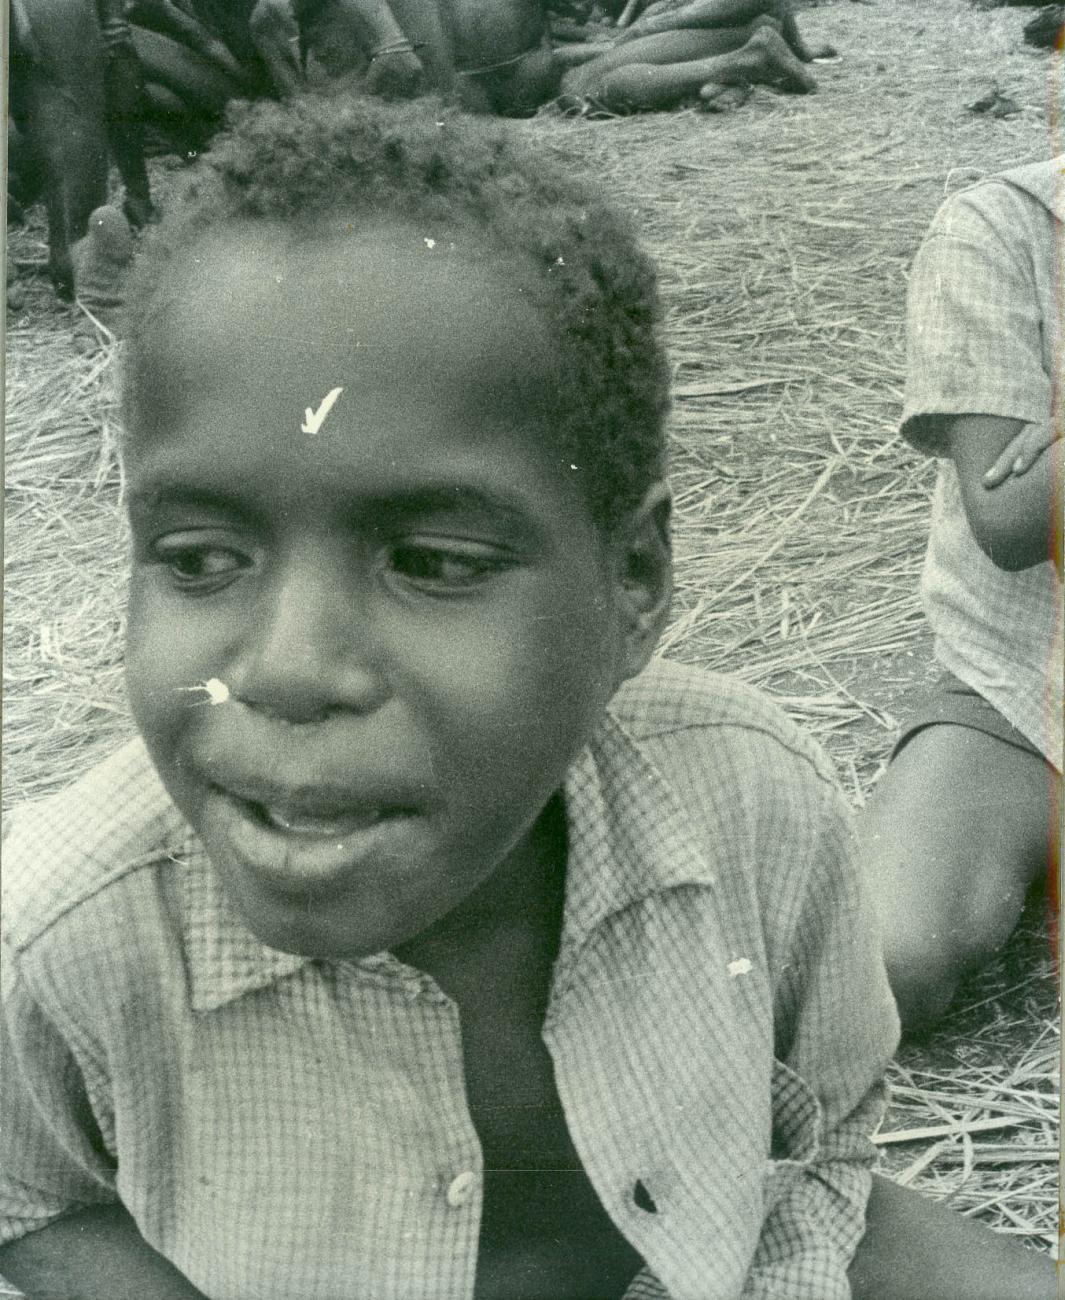 BD/40/63 - 
Papua child
